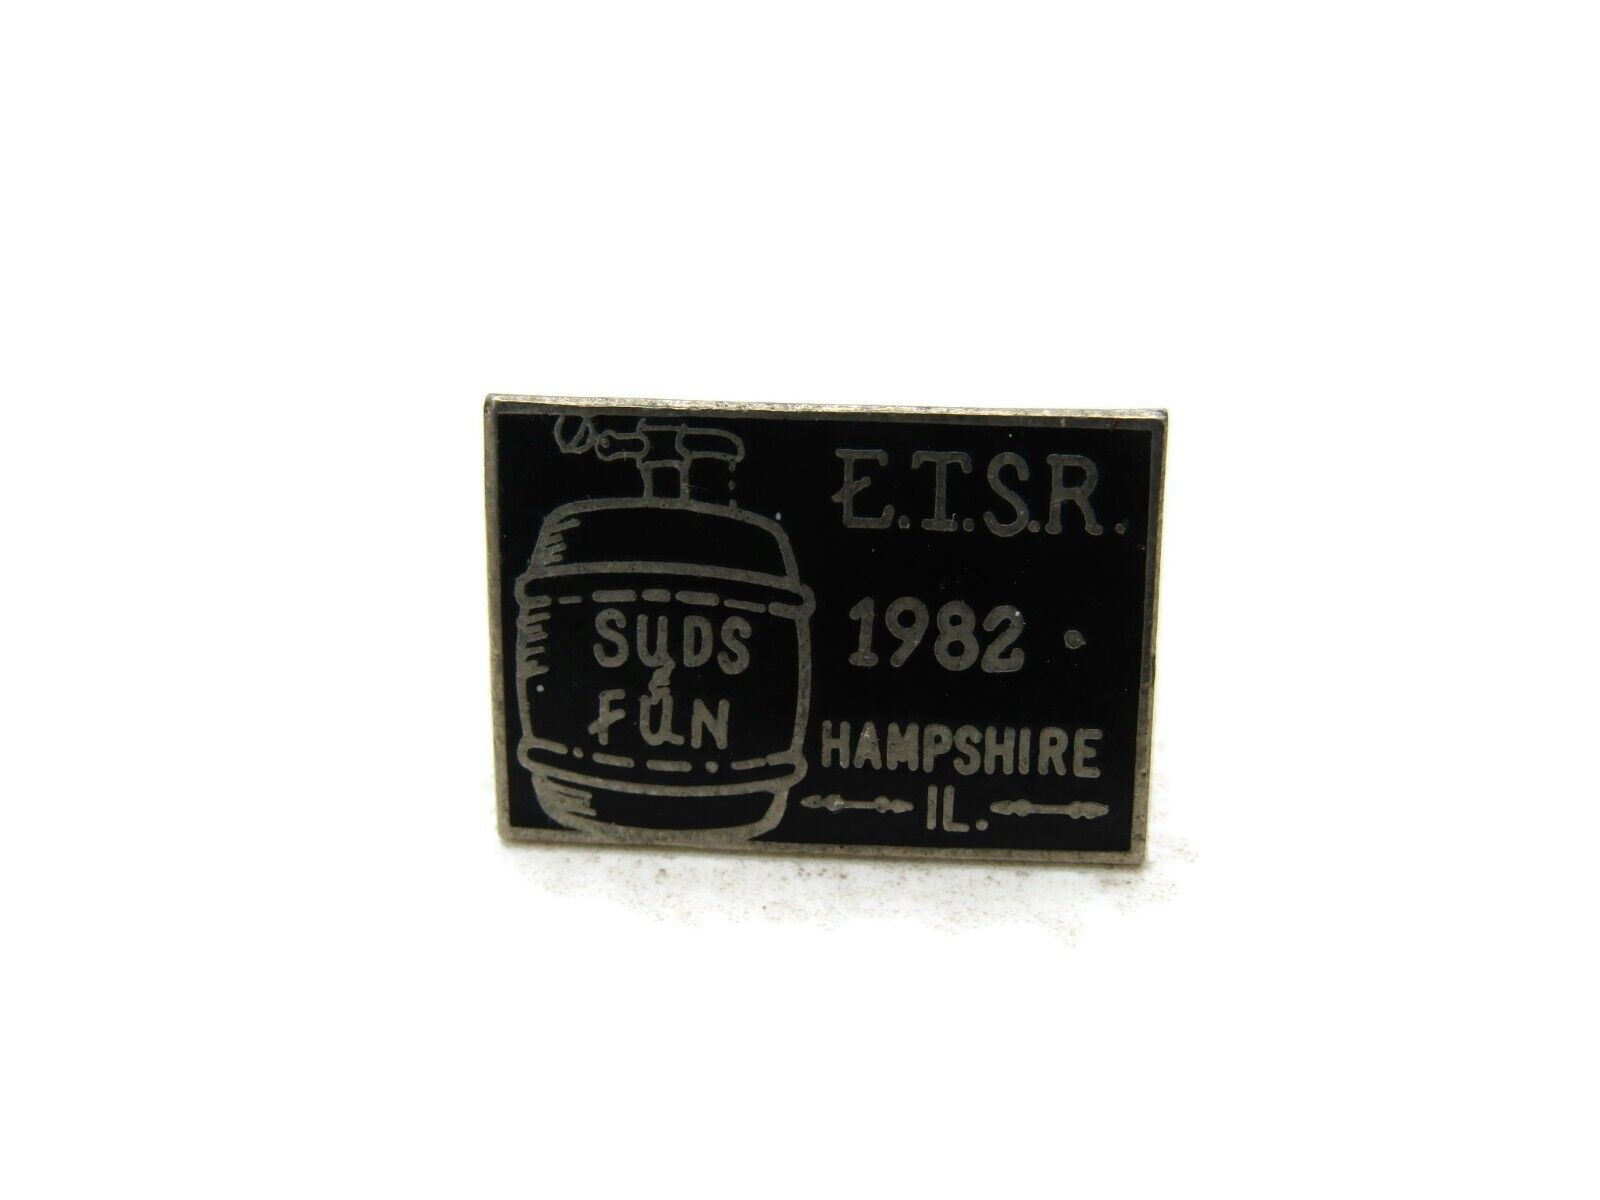 E.T.S.R 1982 Suds & Fun Pin Hampshire IL. Black & Silver Tone